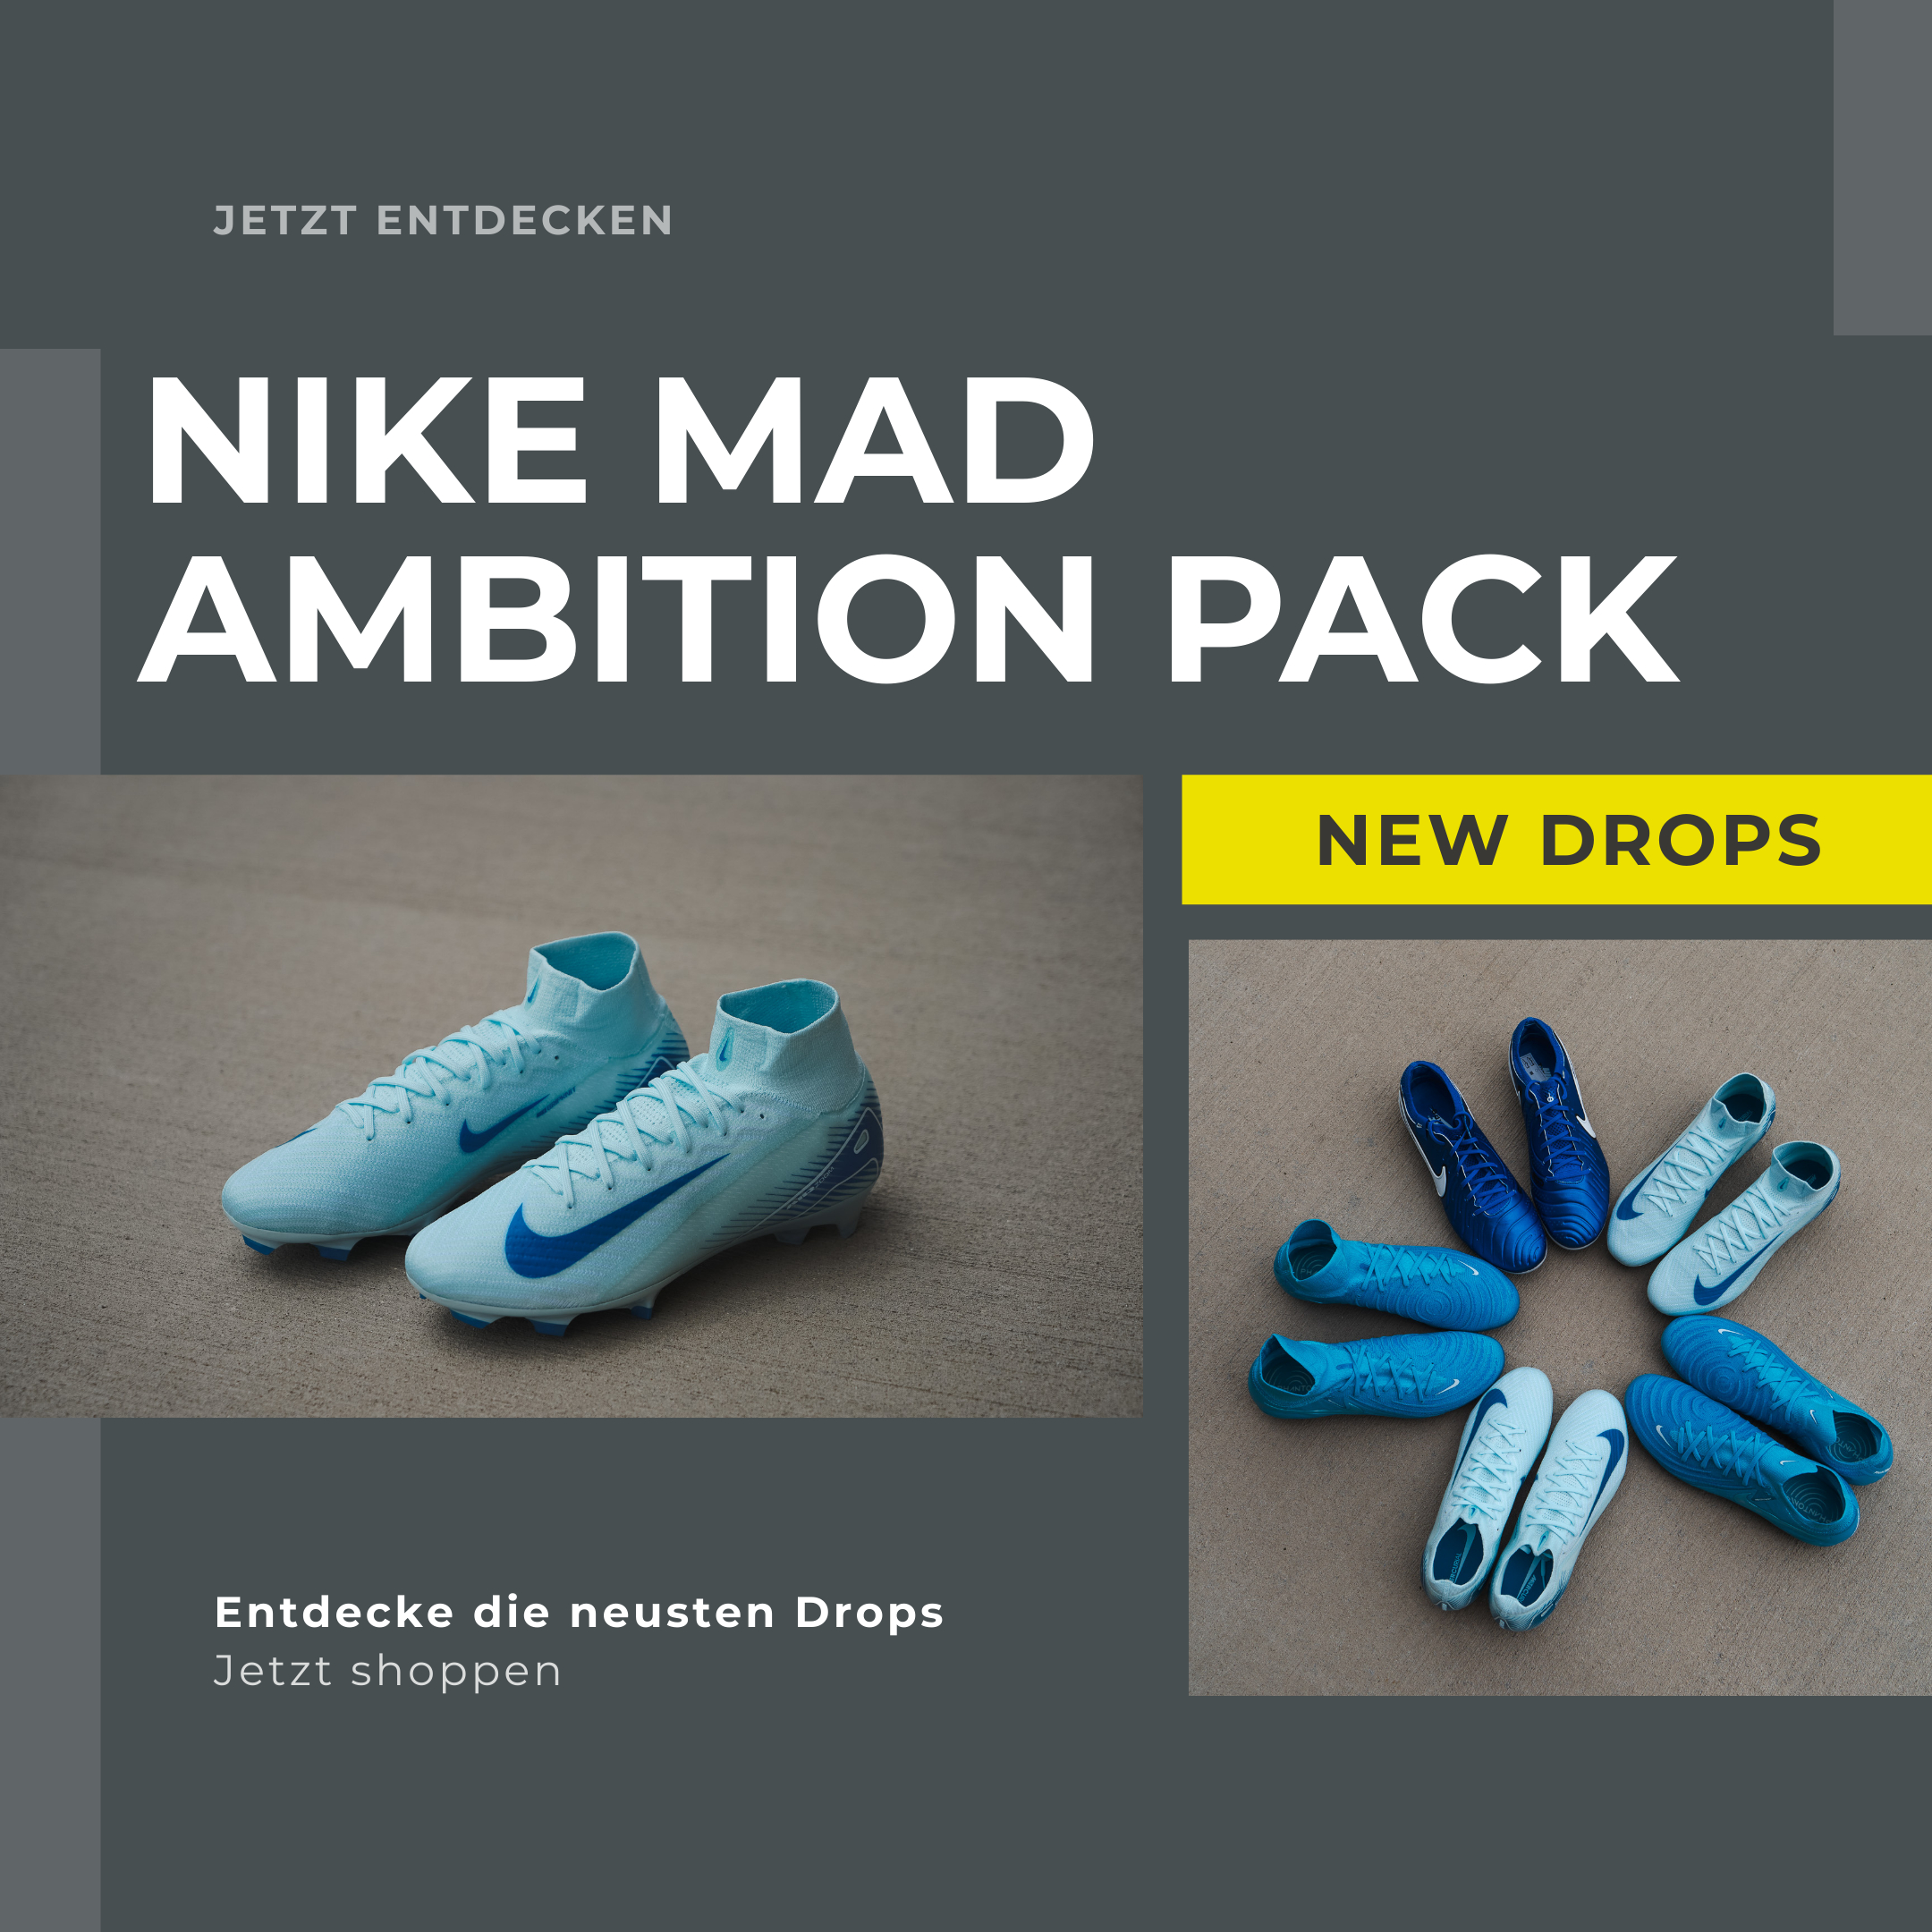 Nike Rising Gem Pack